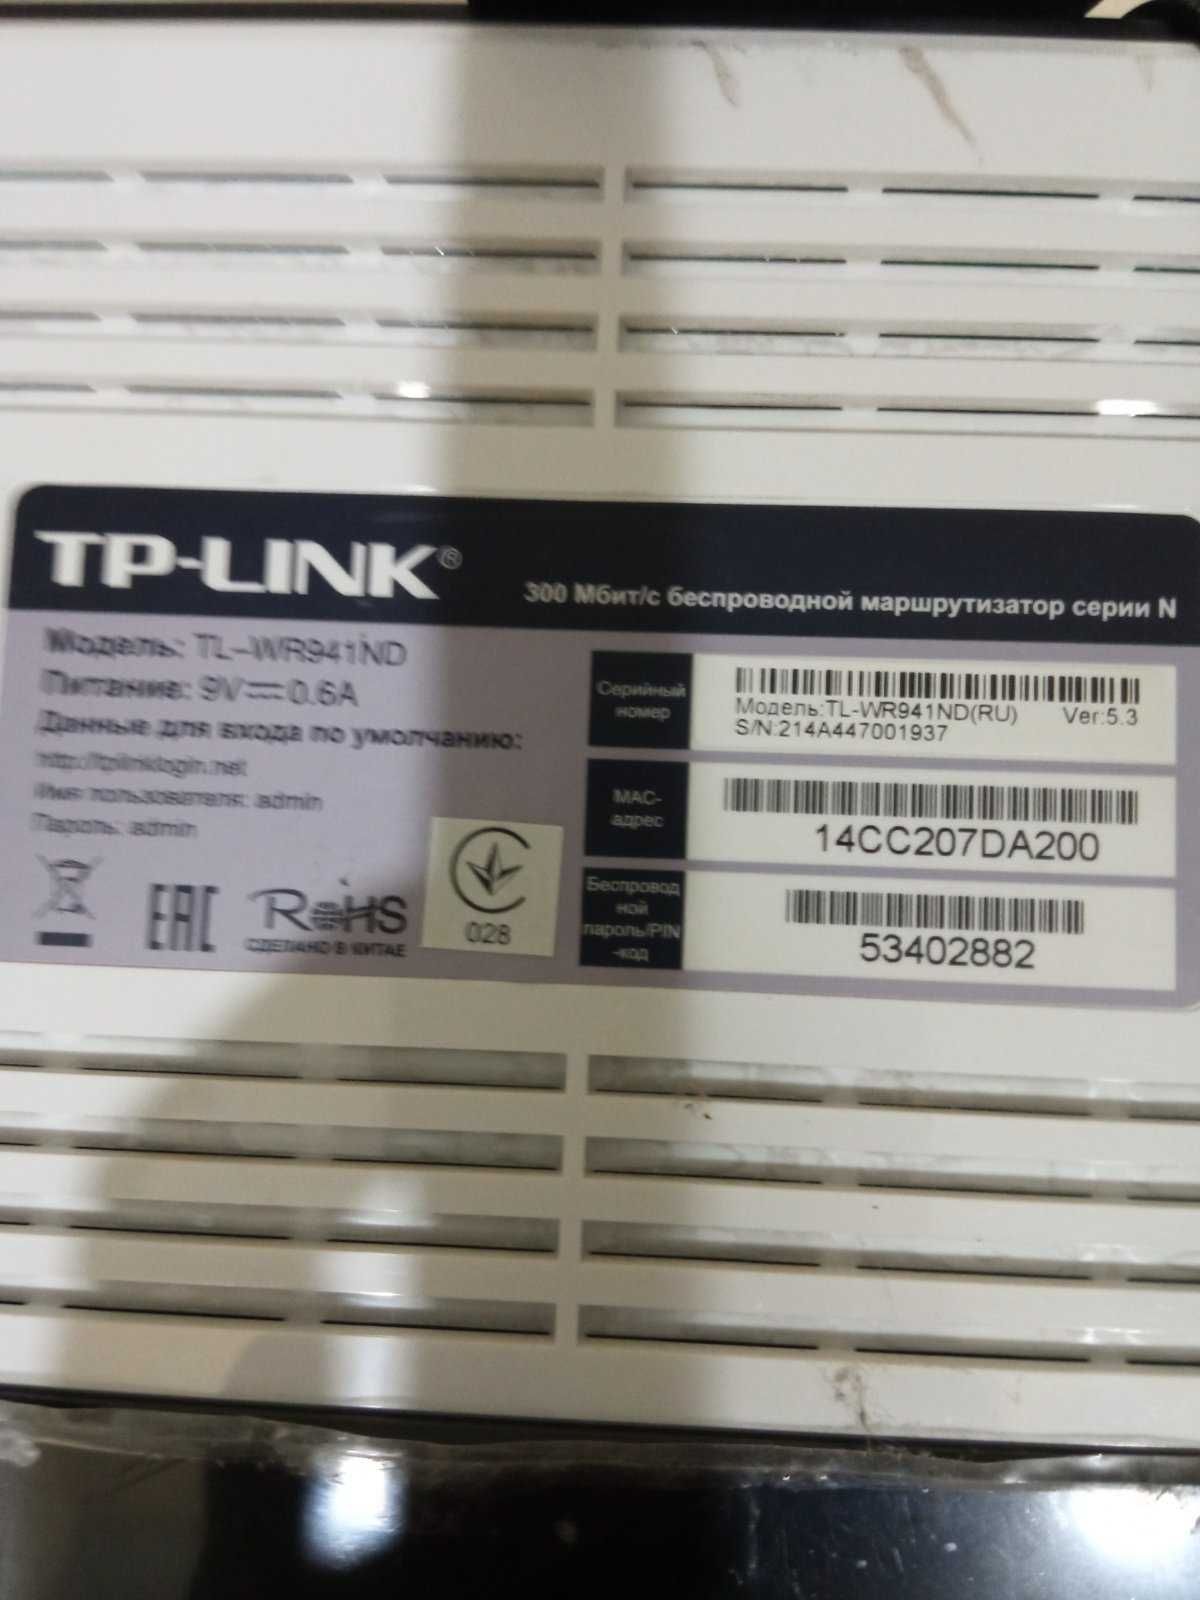 Продам роутер TP-LINK, б/в